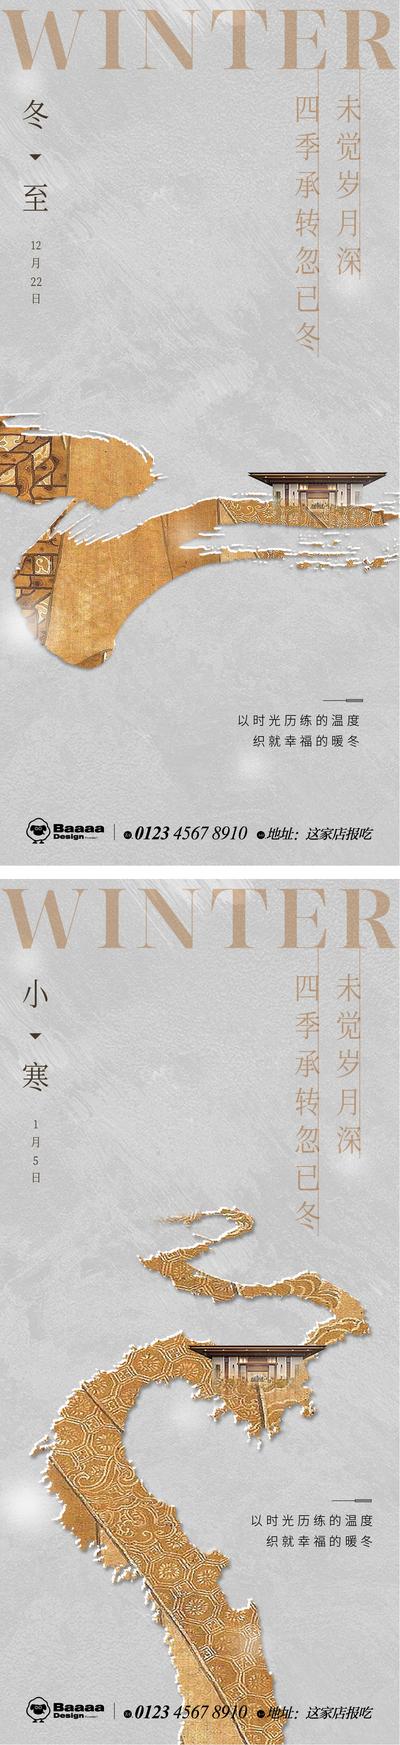 南门网 广告 节气 中式 冬至 小寒 传统节日 新中式 排版 书法 大气 刷屏 微信